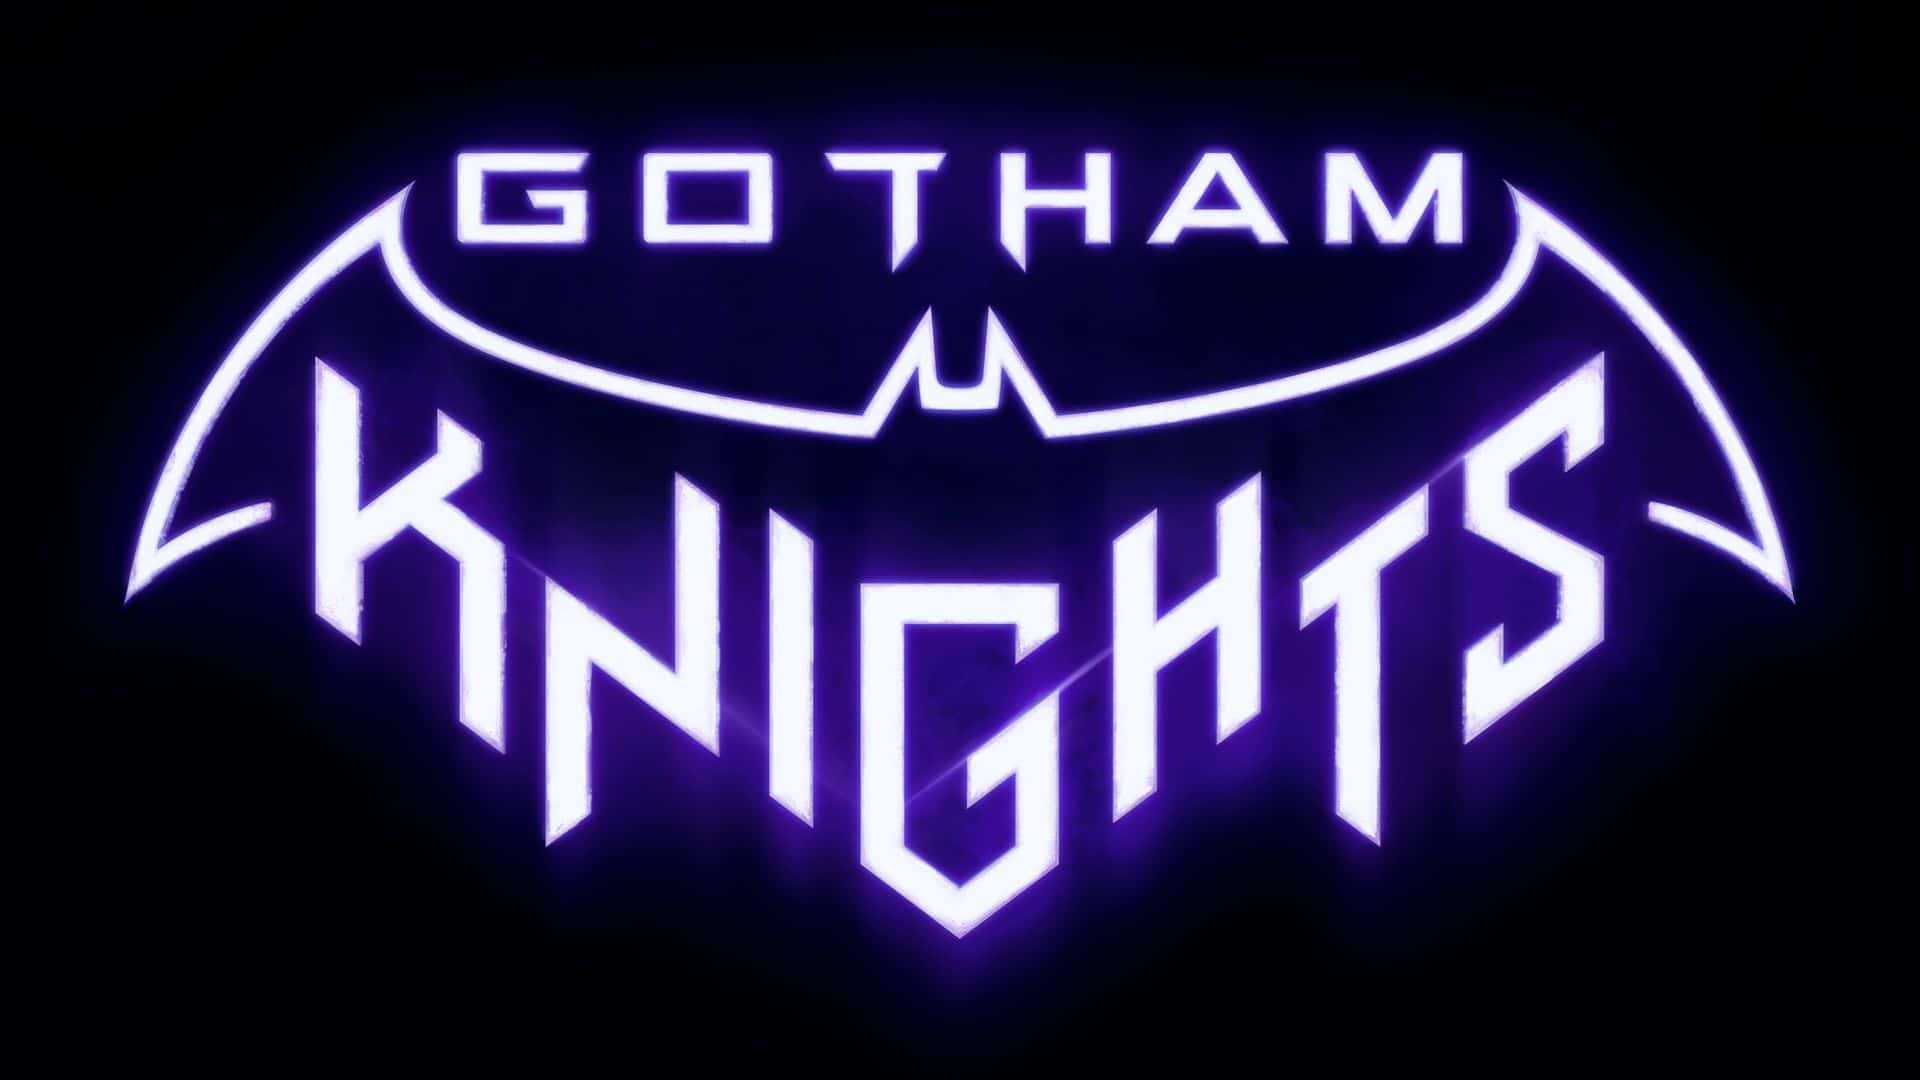 Gotham Knights en Steam parece superar los 86 GB